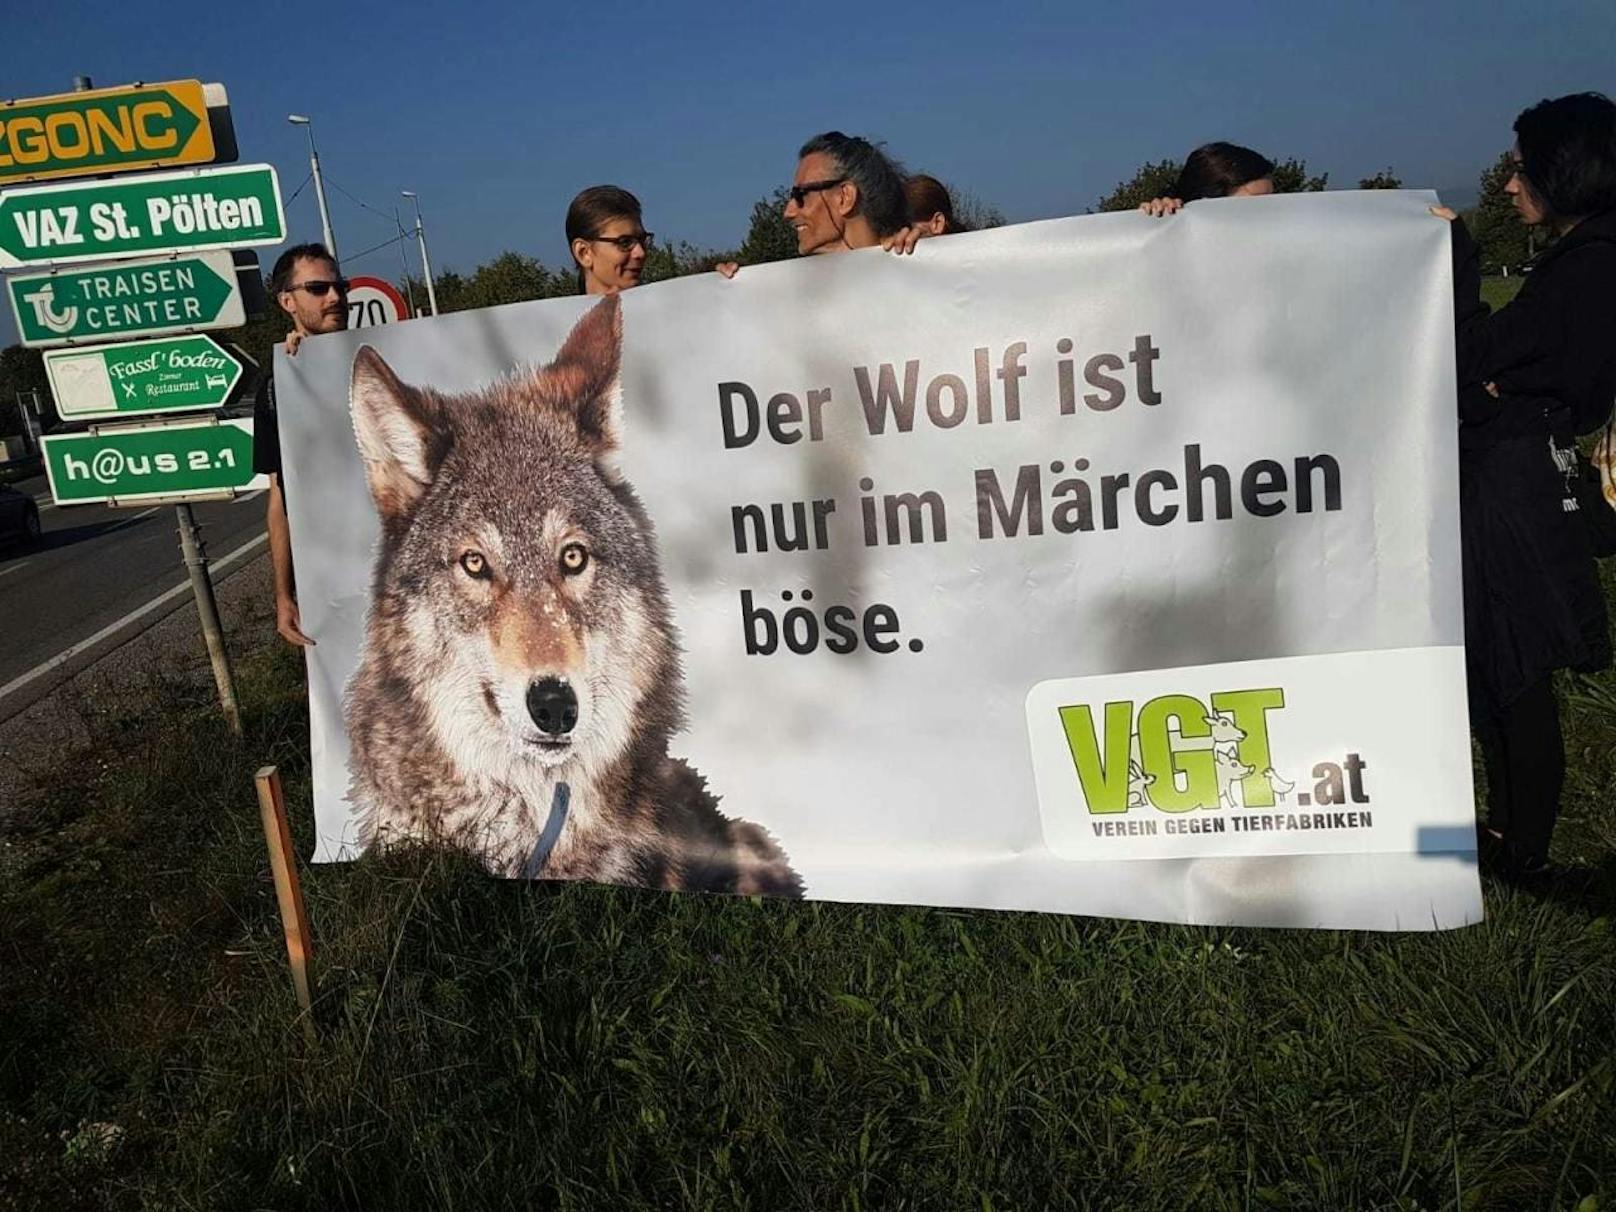 Die Aktivisten vom "VGT - Verein gegen Tierfabriken" brachten sich um 9 Uhr morgens an der Stadteinfahrt Sankt Pölten in Stellung. "Der Wolf ist nur im Märchen böse", stand am Plakat.